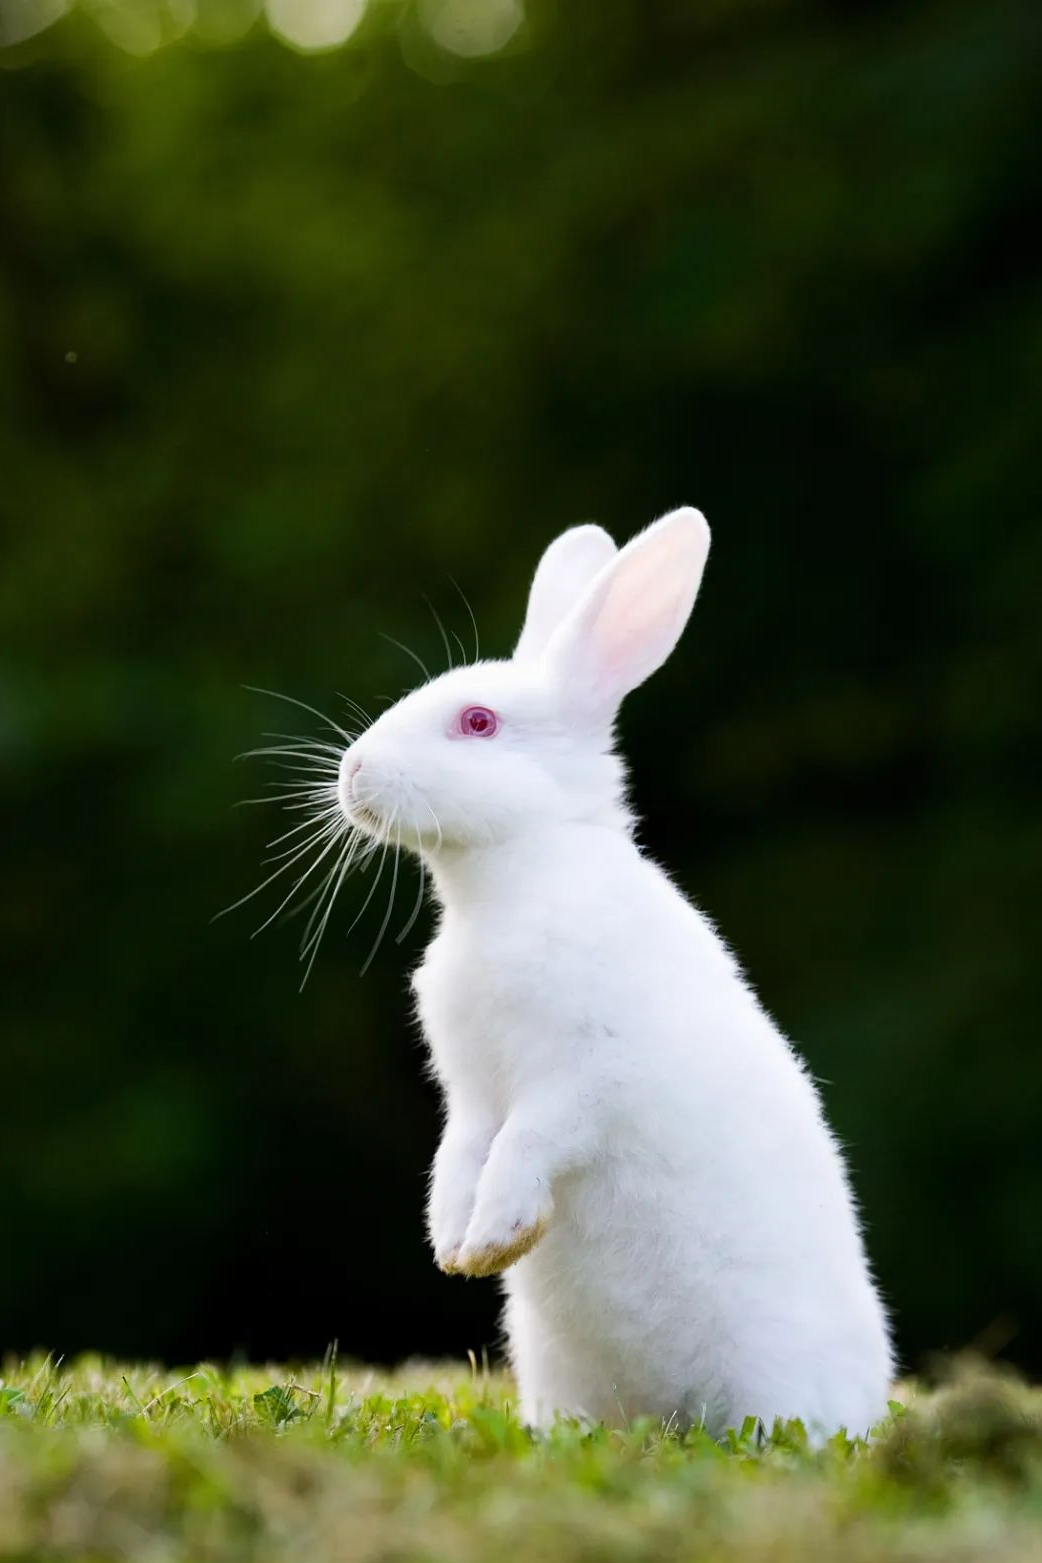 外形特征兔子最明显的是许多人印象中红眼睛,长耳朵外形与习性02都居